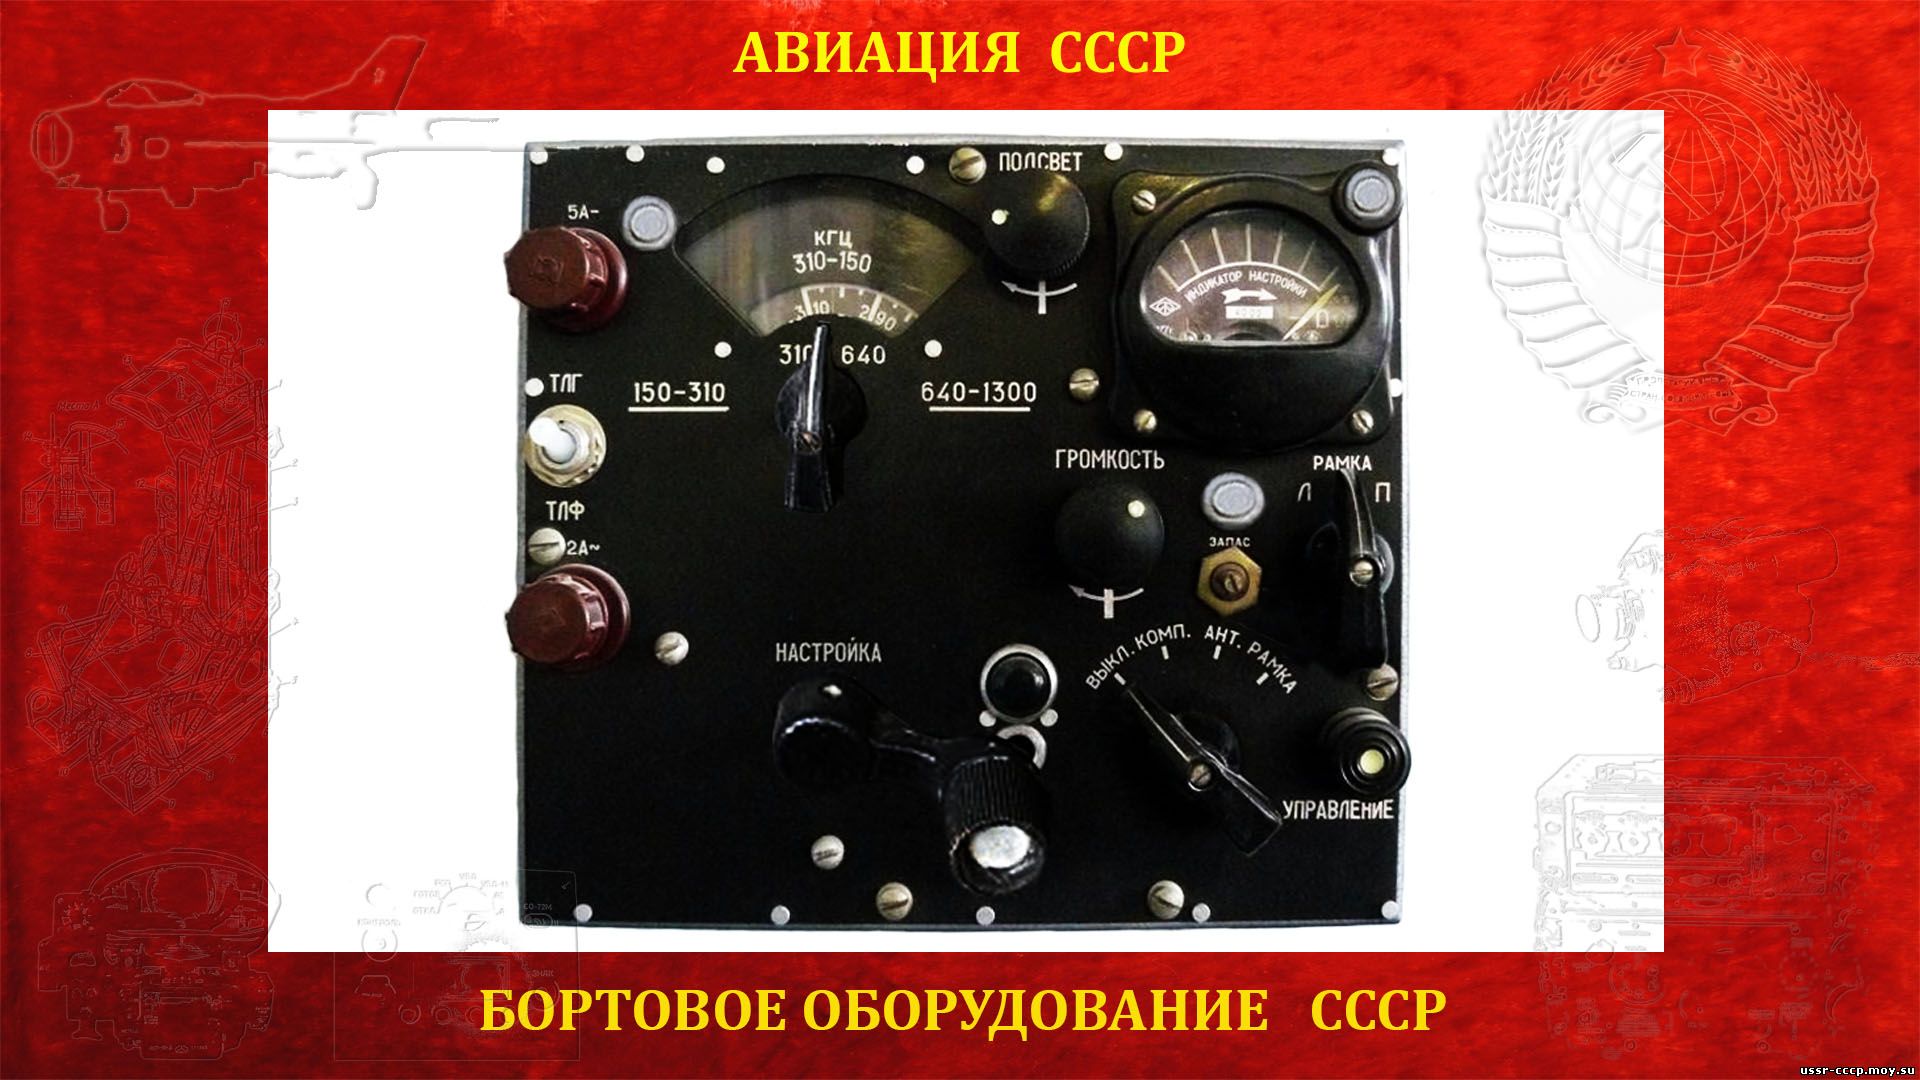 АРК-5 — Автоматический радиокомпас СССР